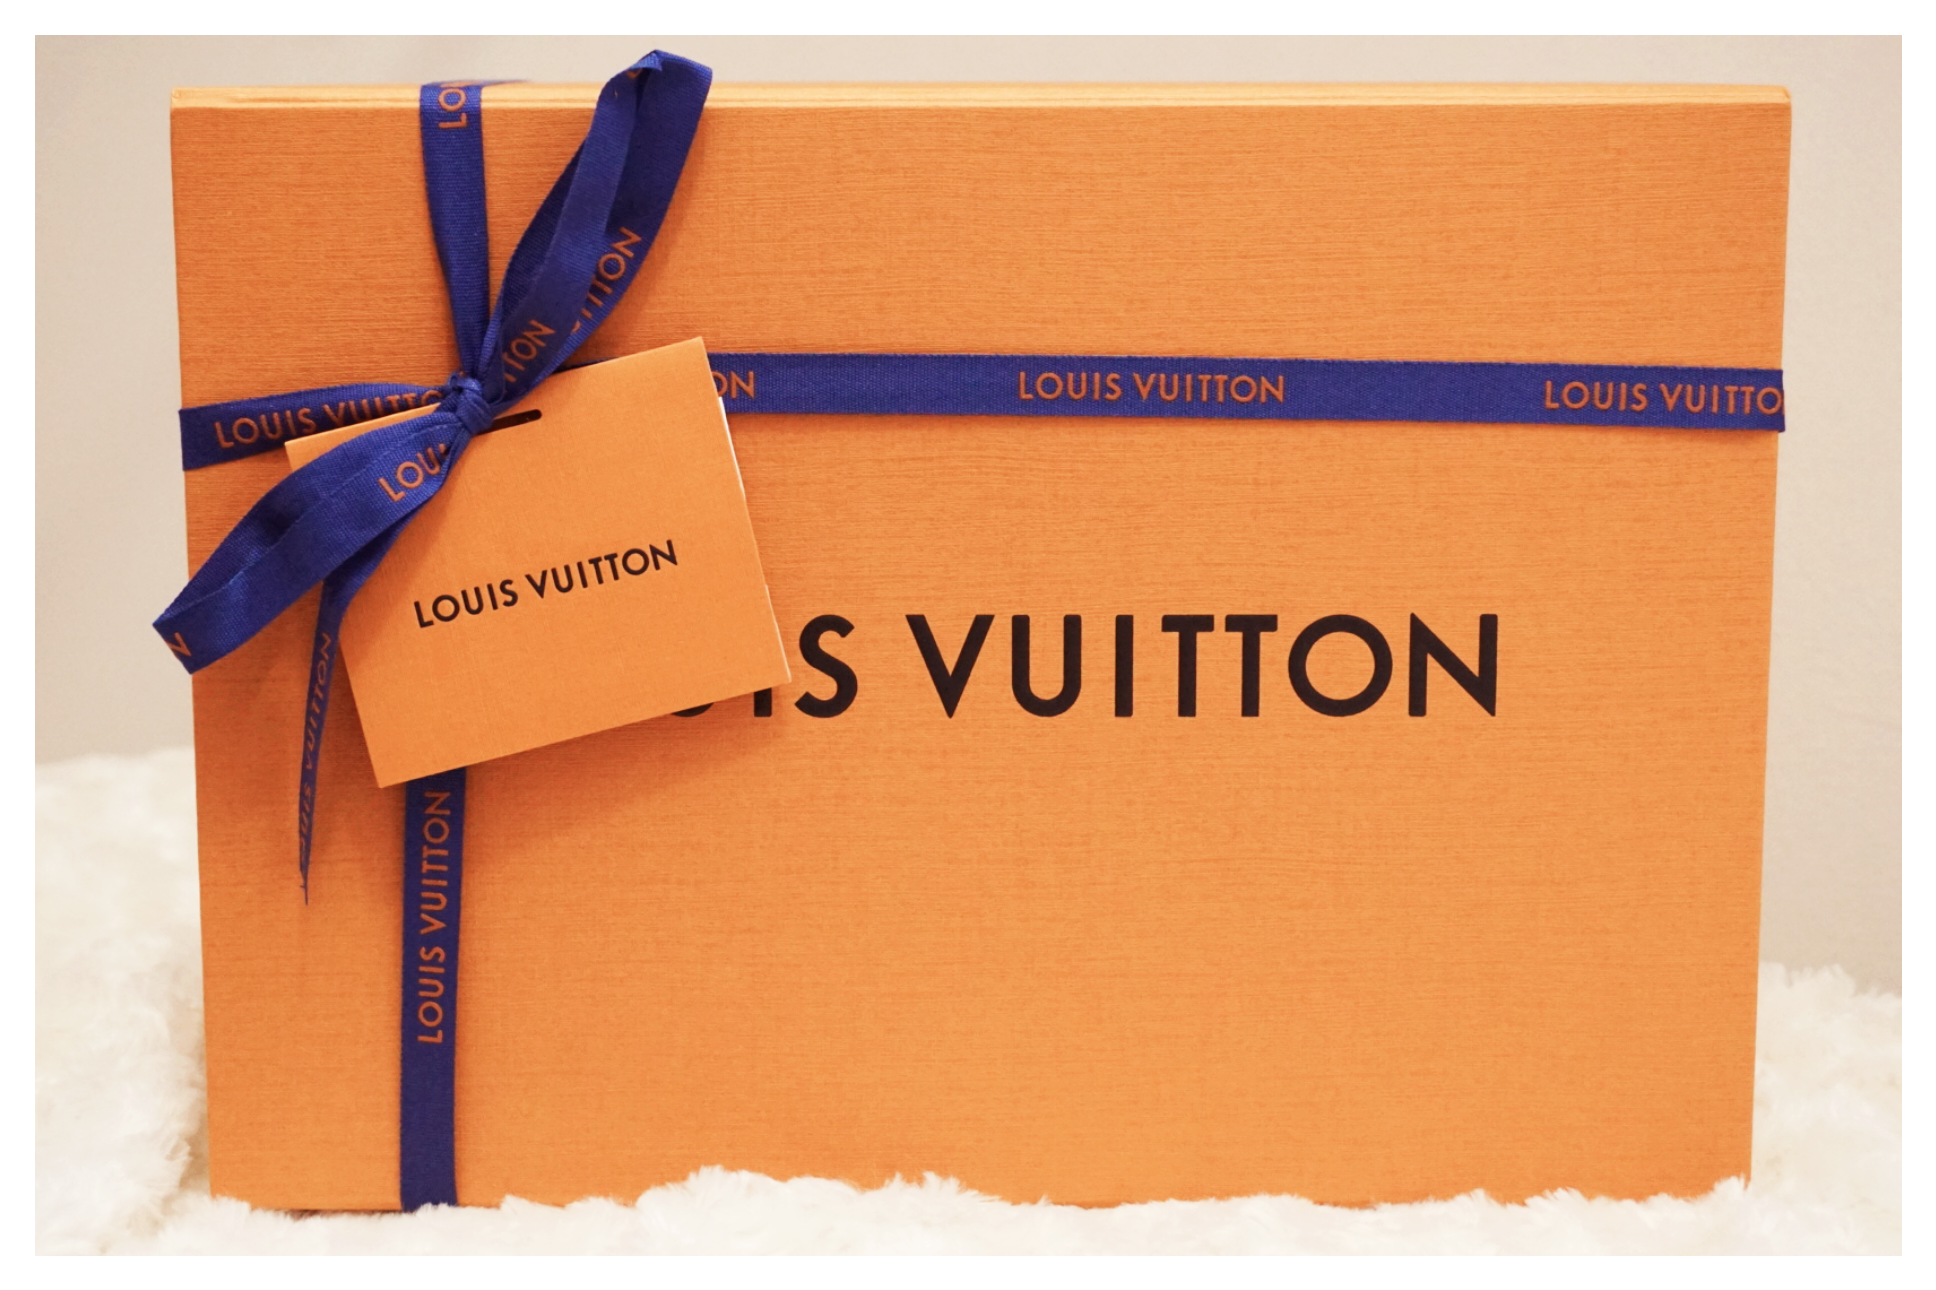 Louis Vuitton Unboxing: LV Sunset Comfort Flat Sandals #shorts  #louisvuitton #unboxingvideo 